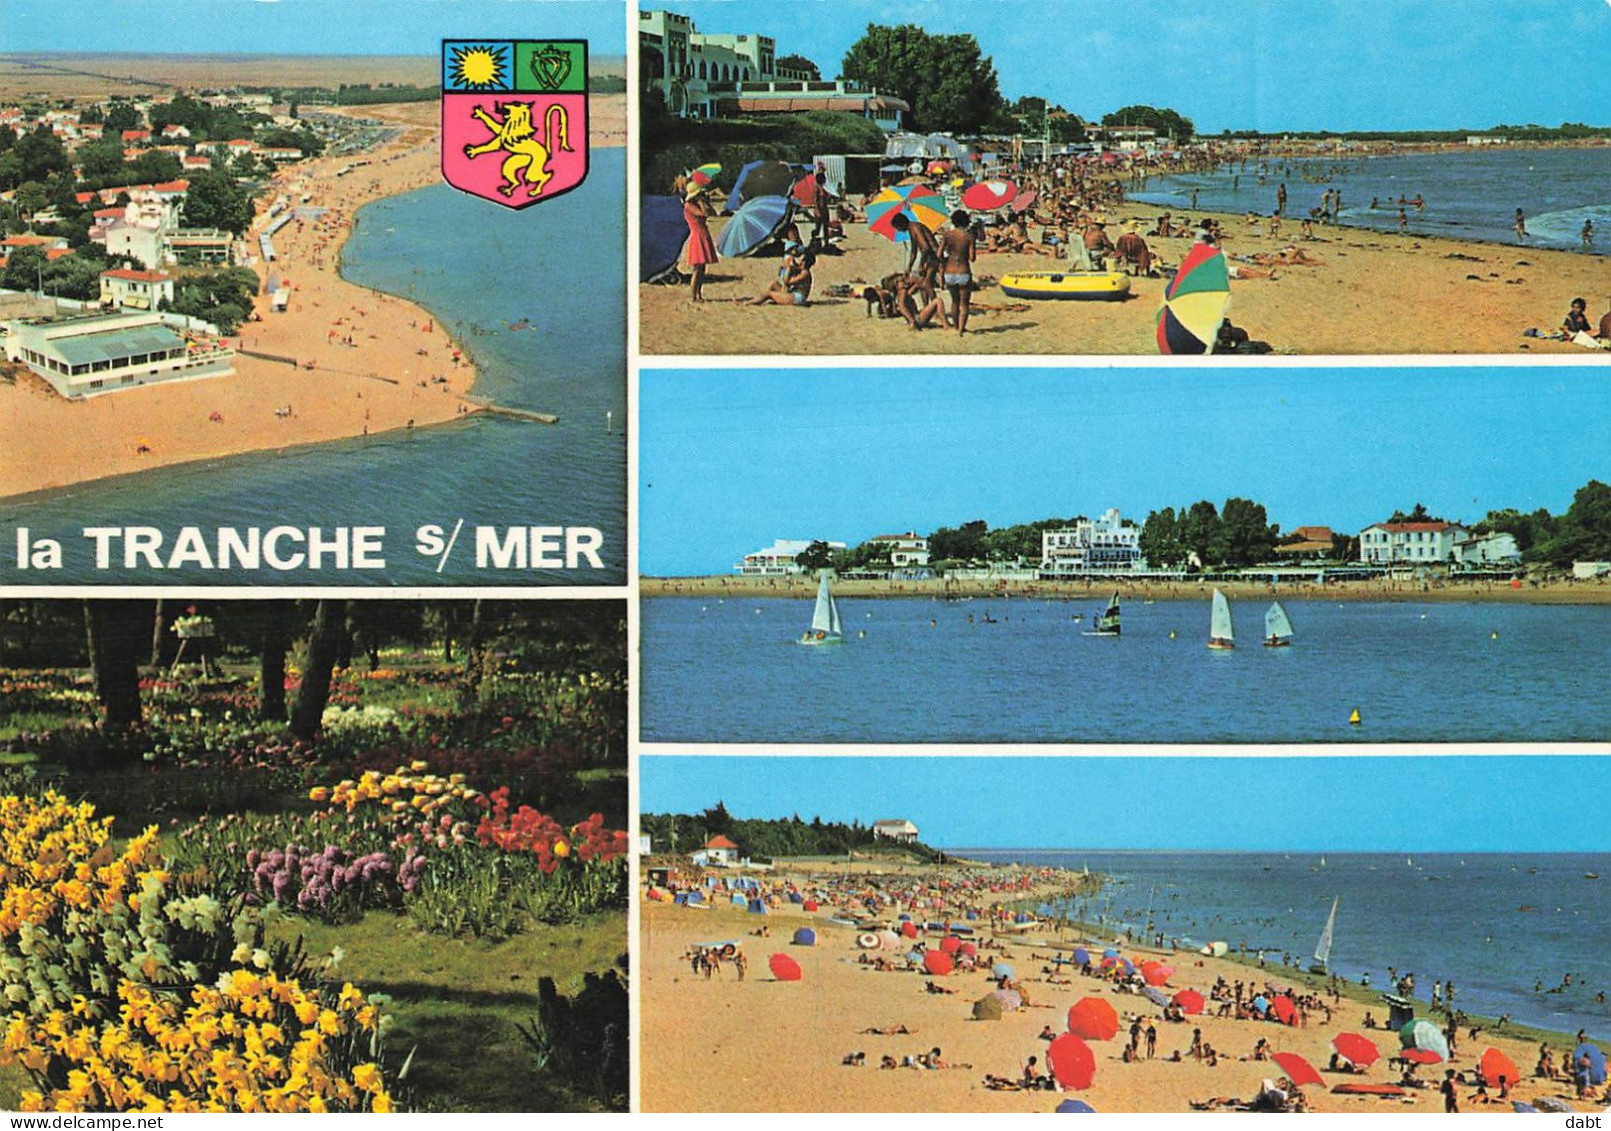 carton de 7,620 kilos de cartes postales principalement France , modernes et semi modernes.